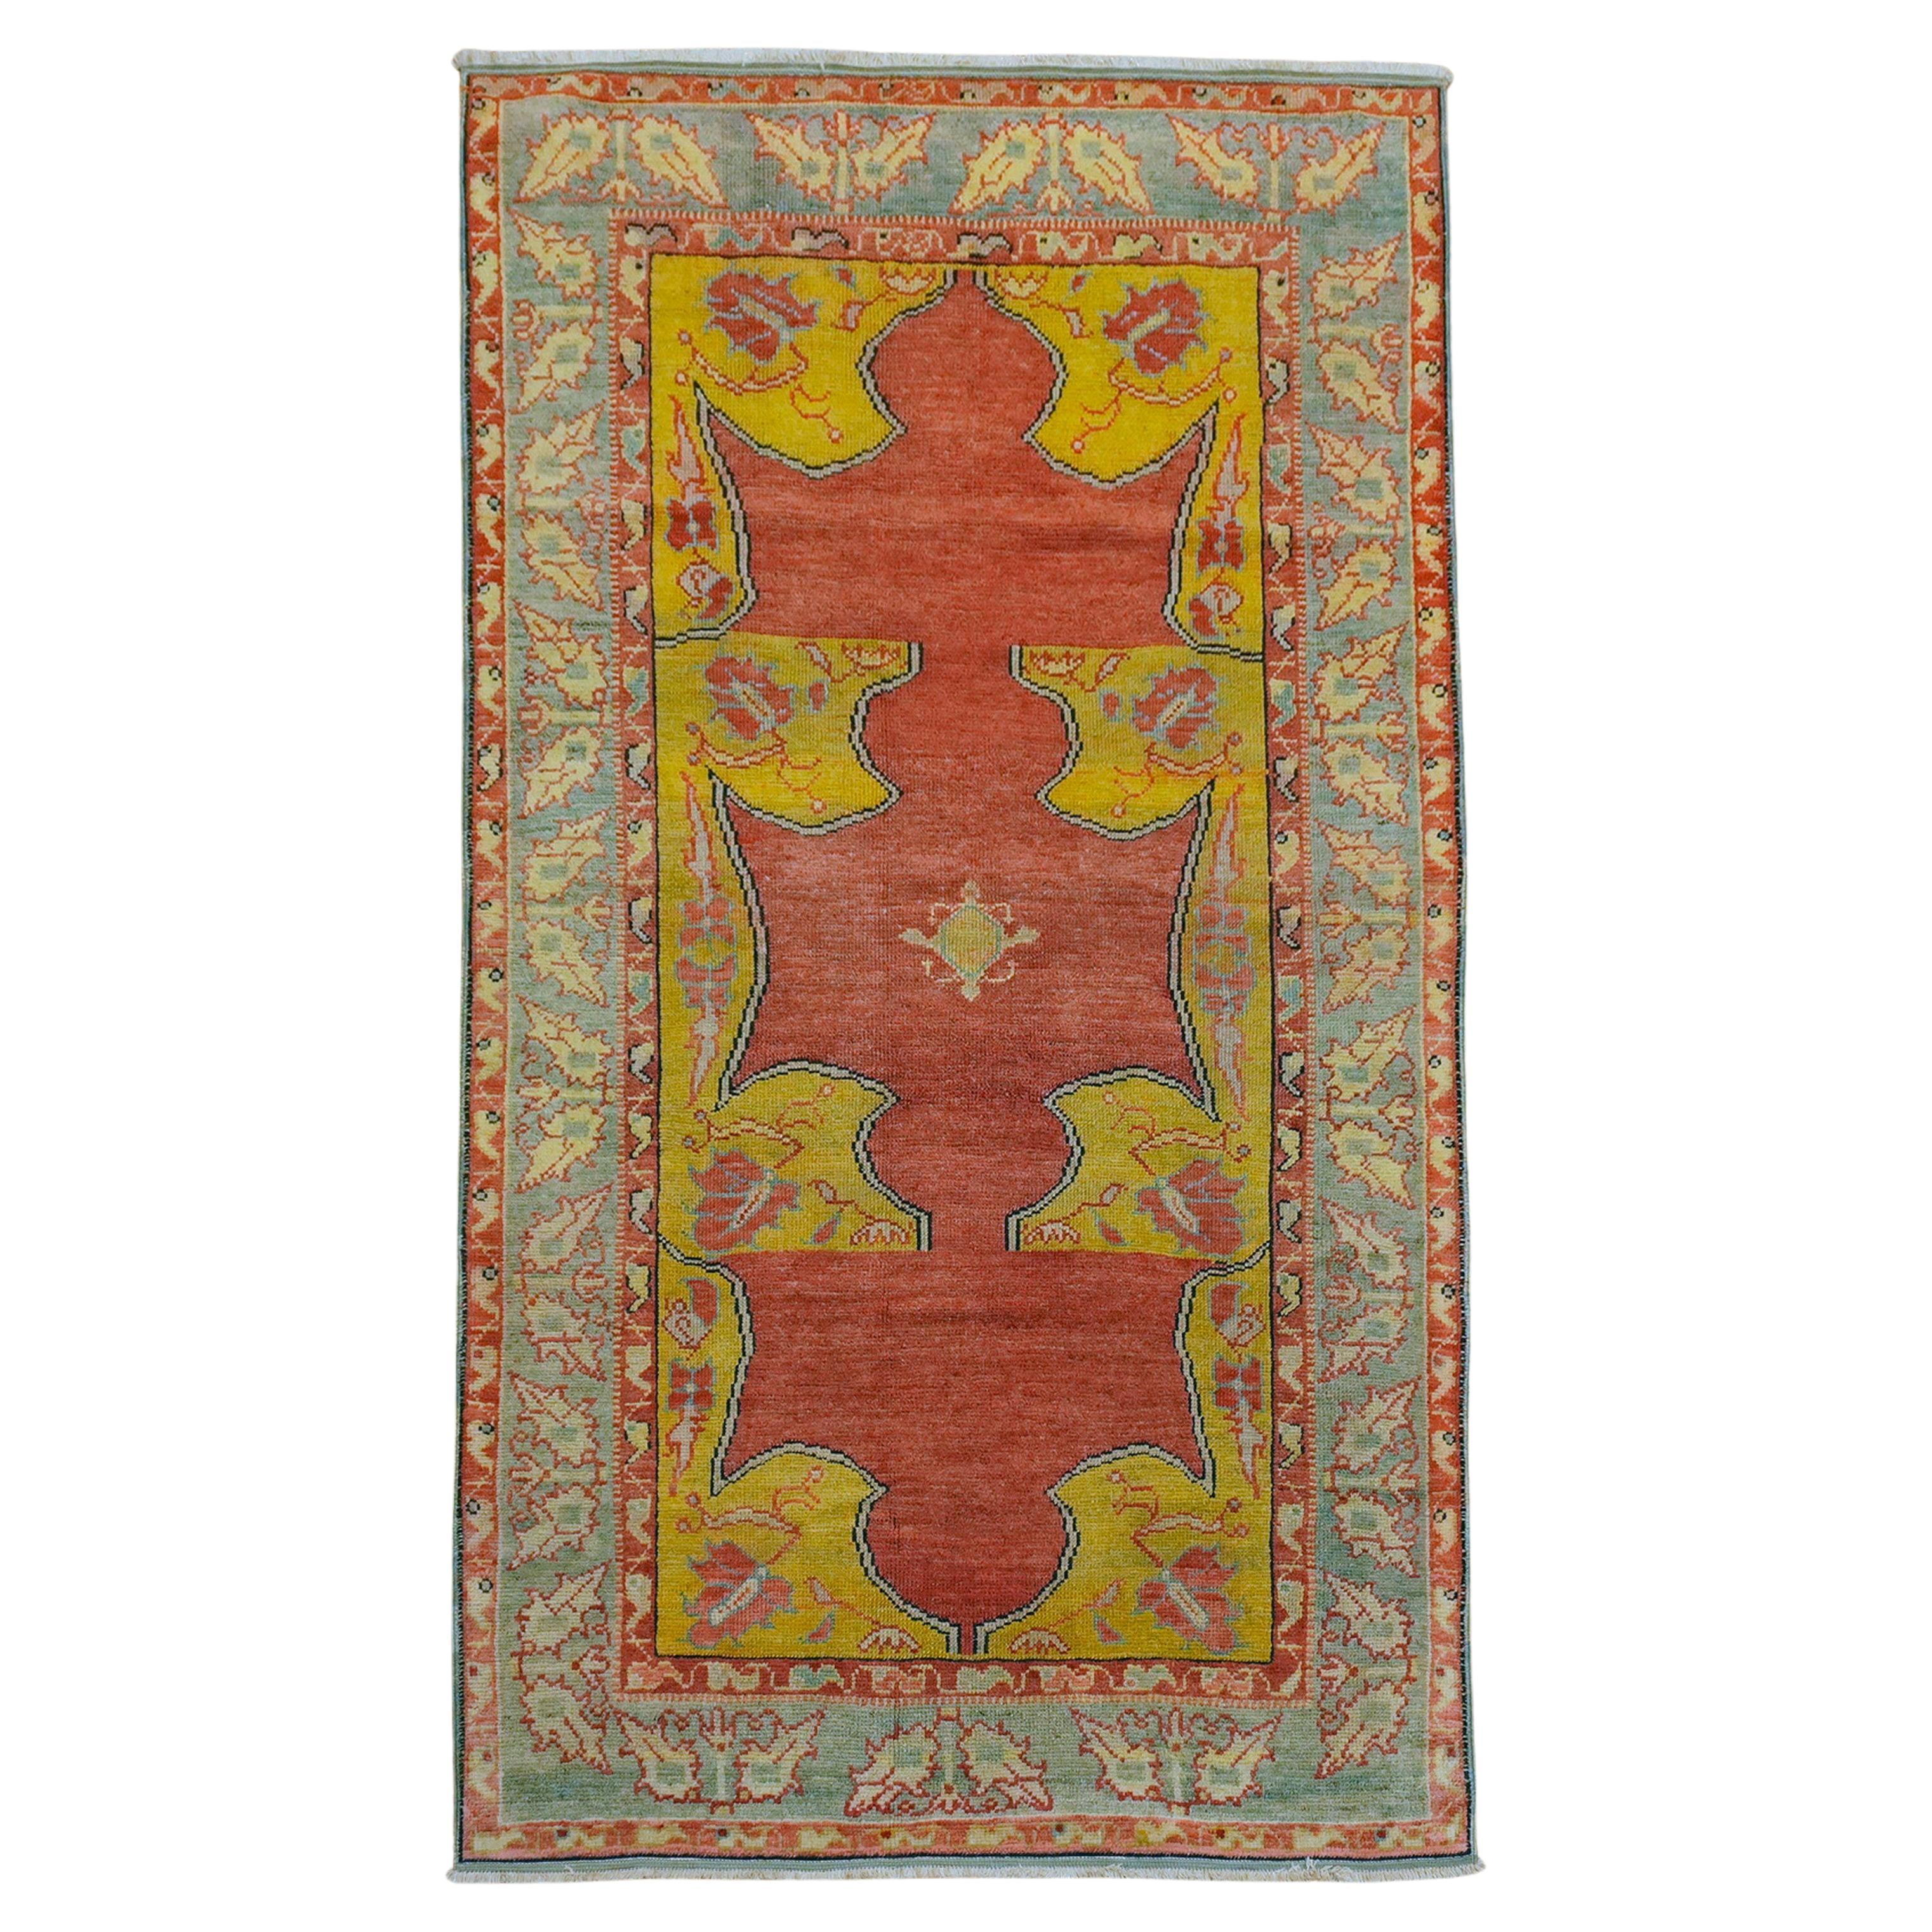 Eleganter goldroter antiker türkischer Teppich